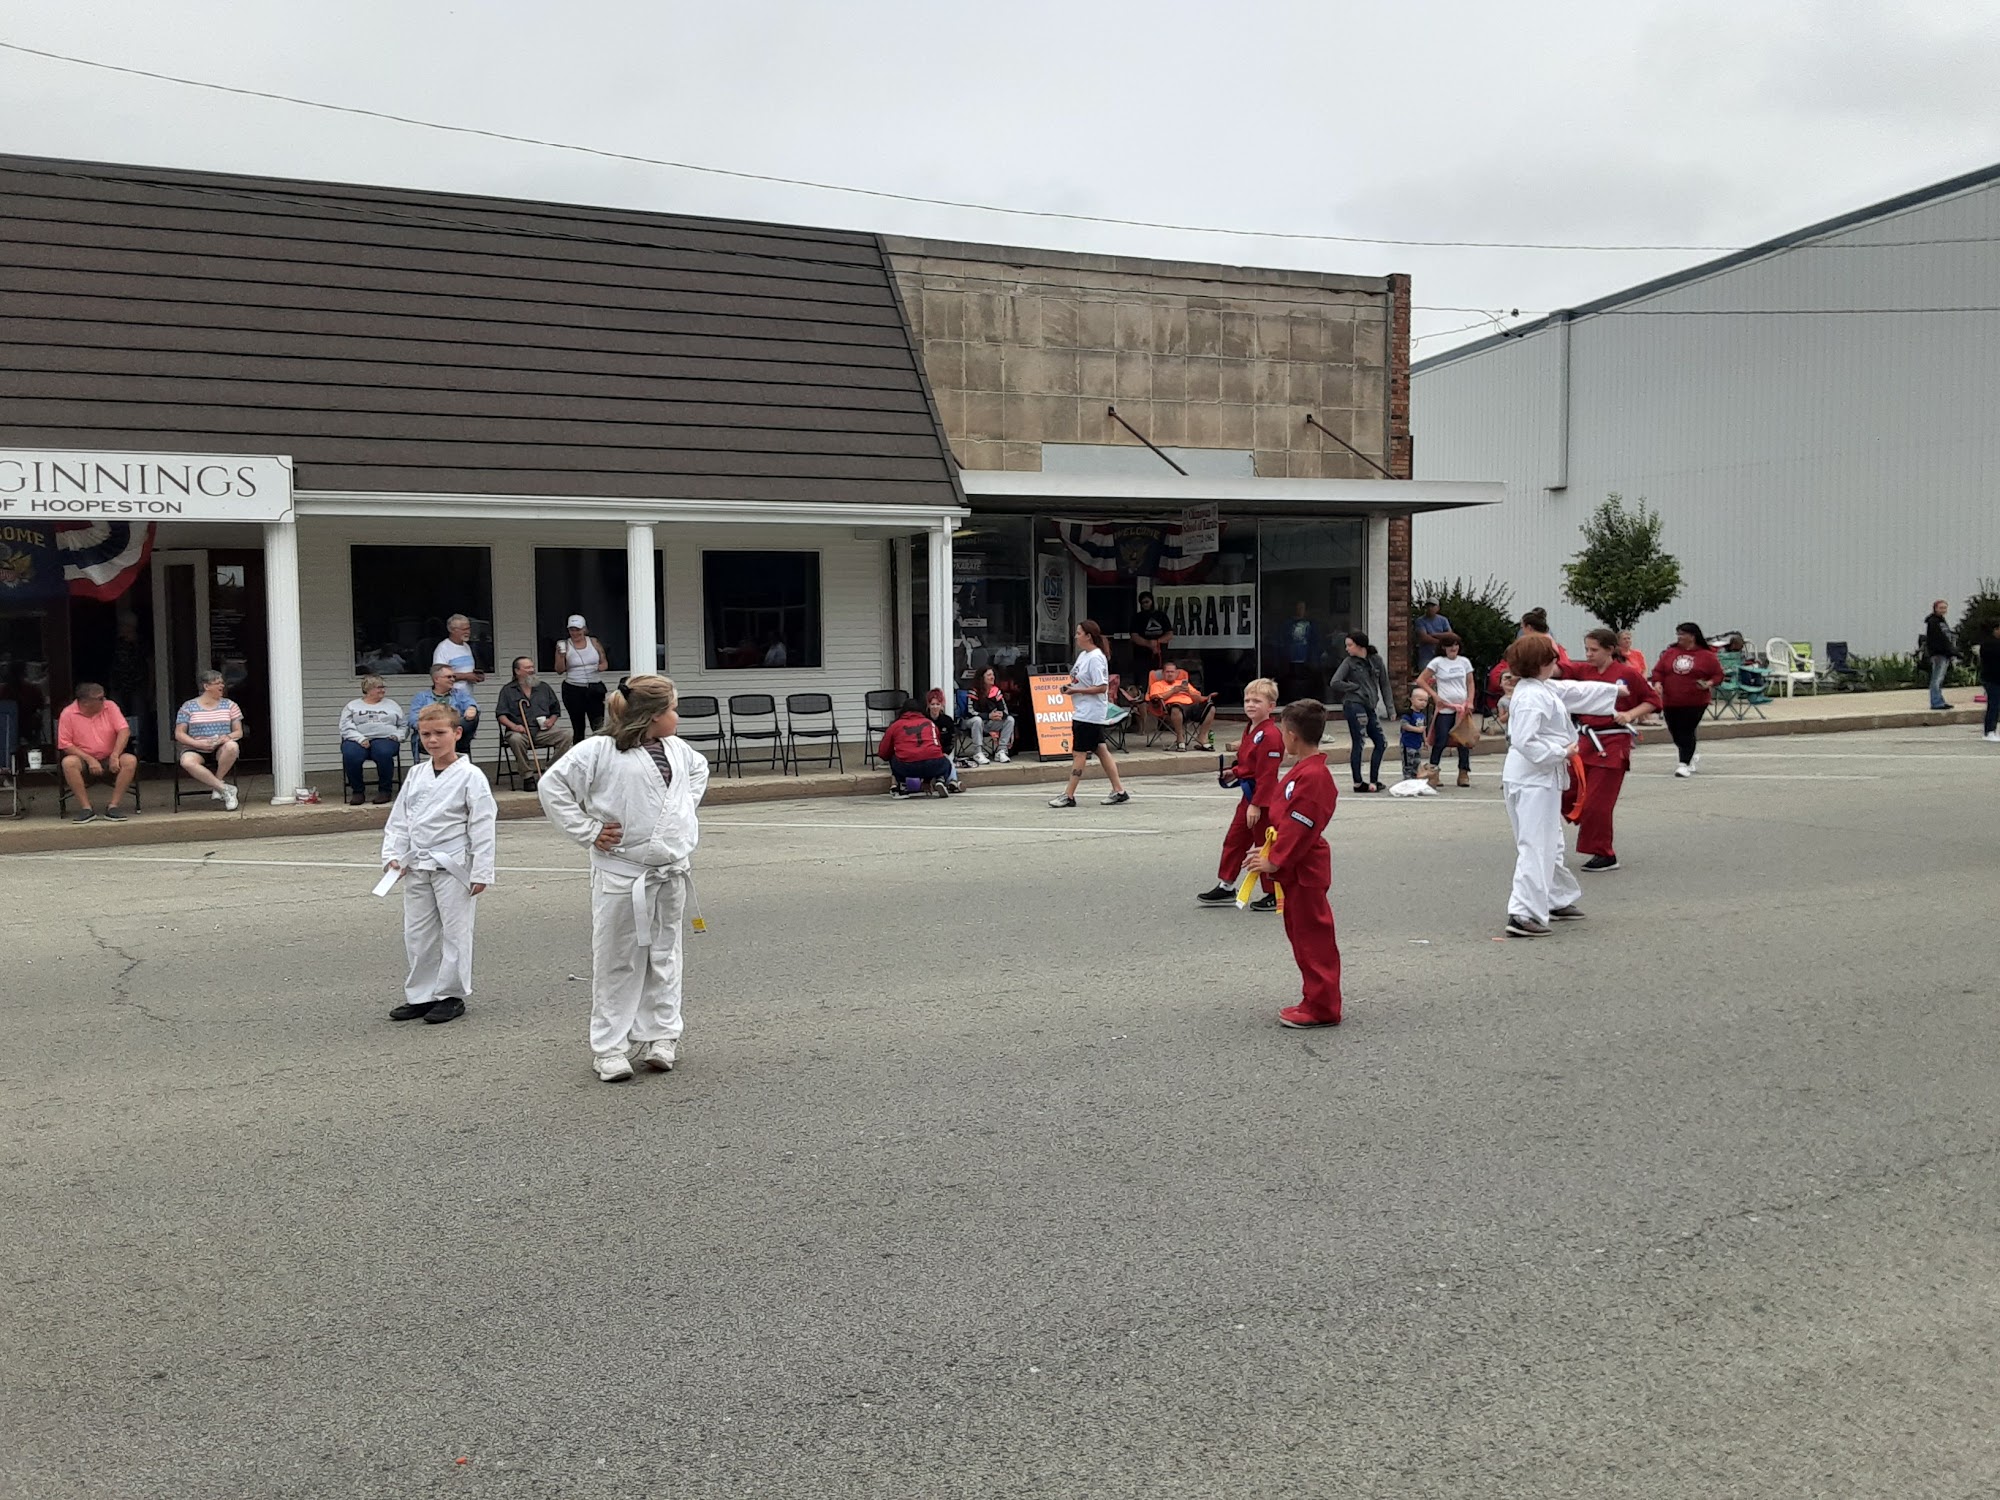 Okinawan School of Karate 208 E Main St, Hoopeston Illinois 60942